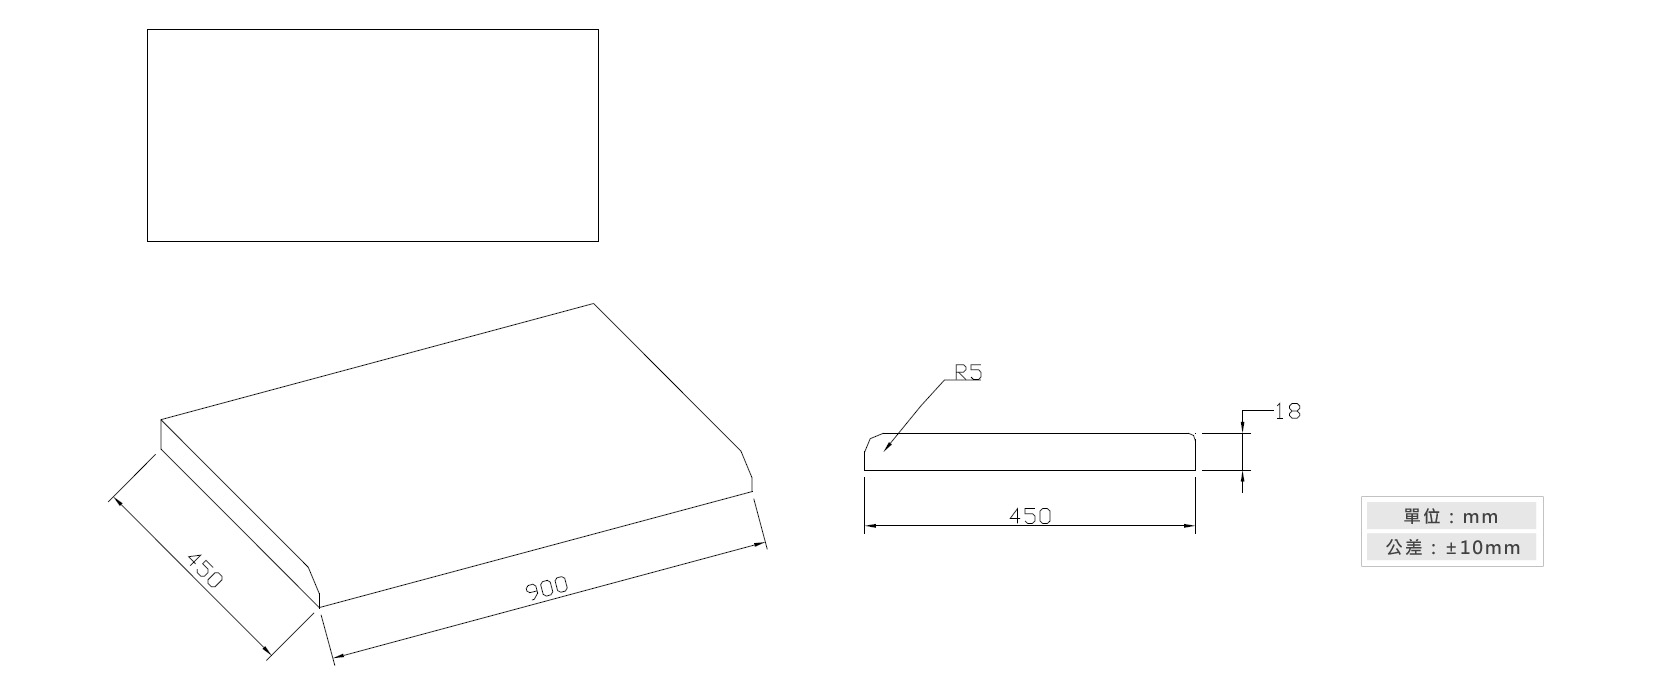 3-47公文櫃面板材質說明